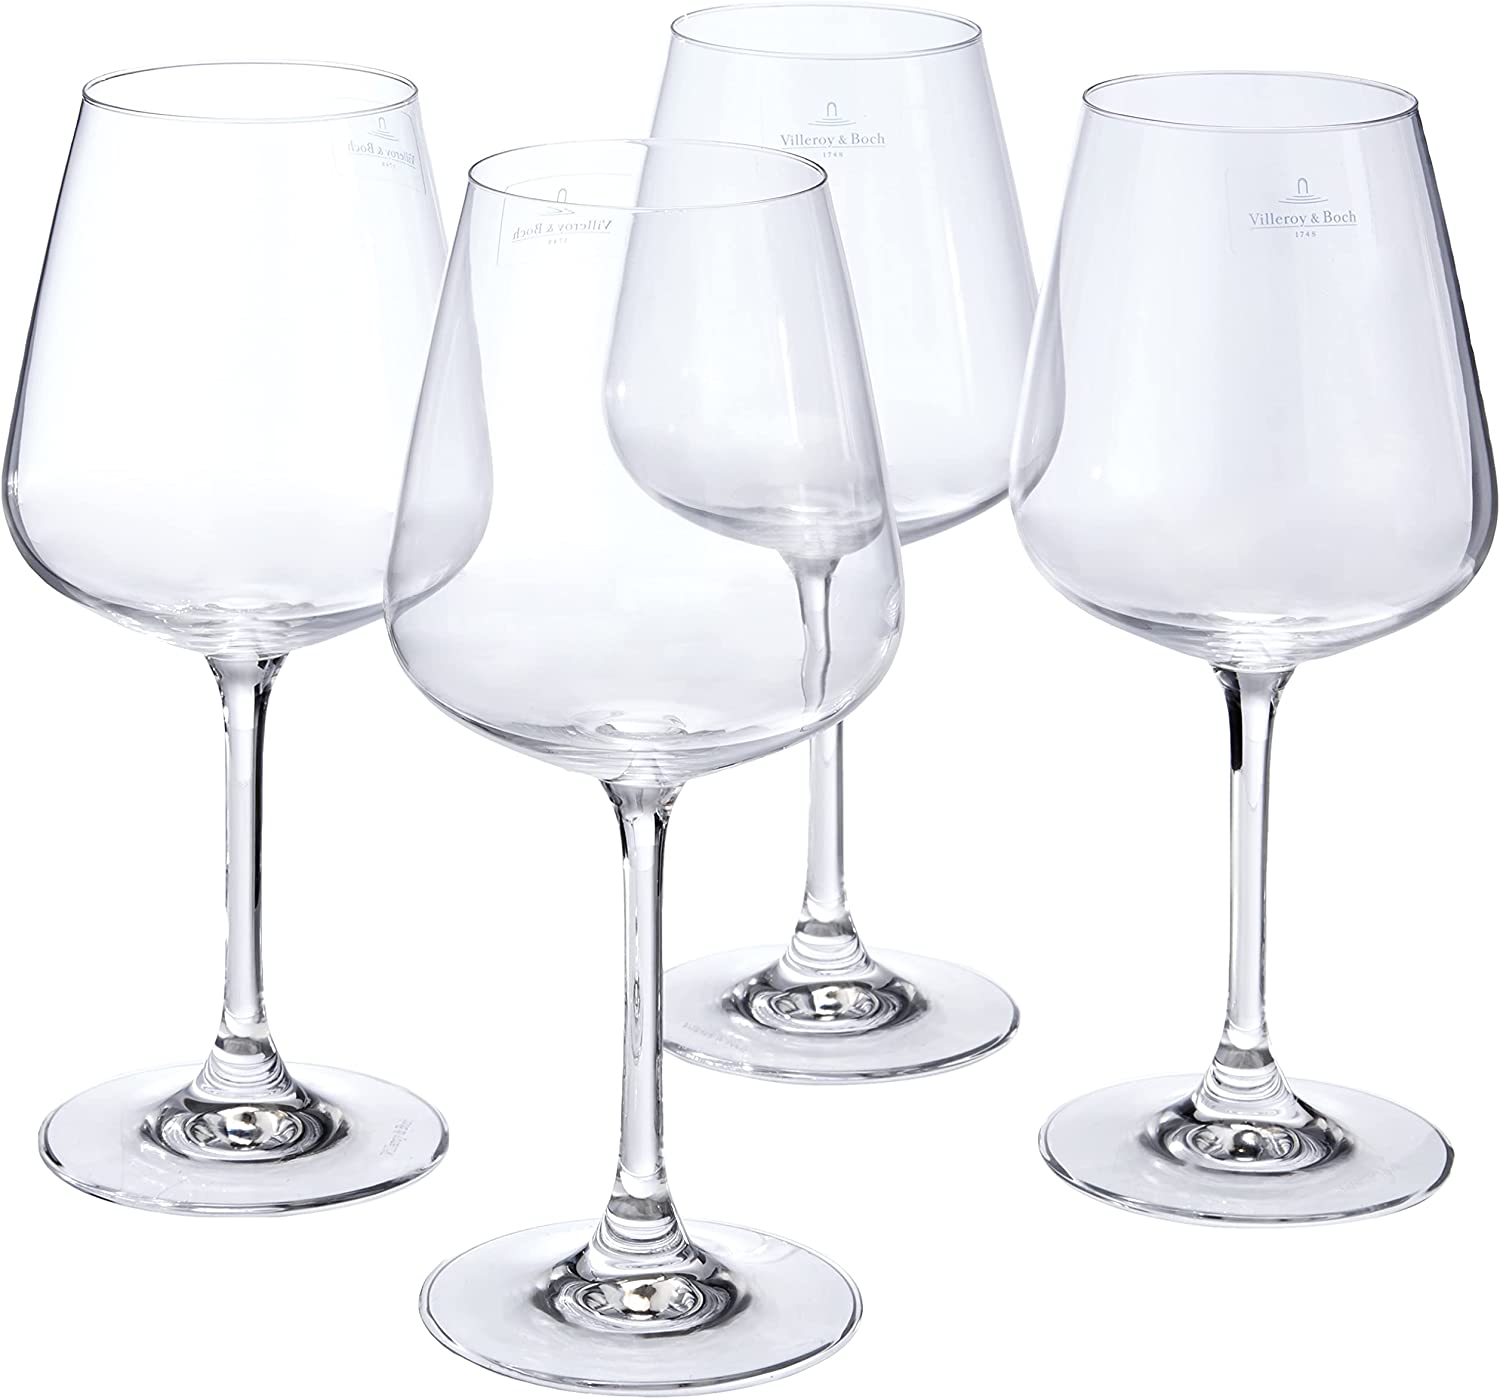 Villeroy & Boch Ovid Set of 4 Crystal Red Wine Glasses, transparent, .